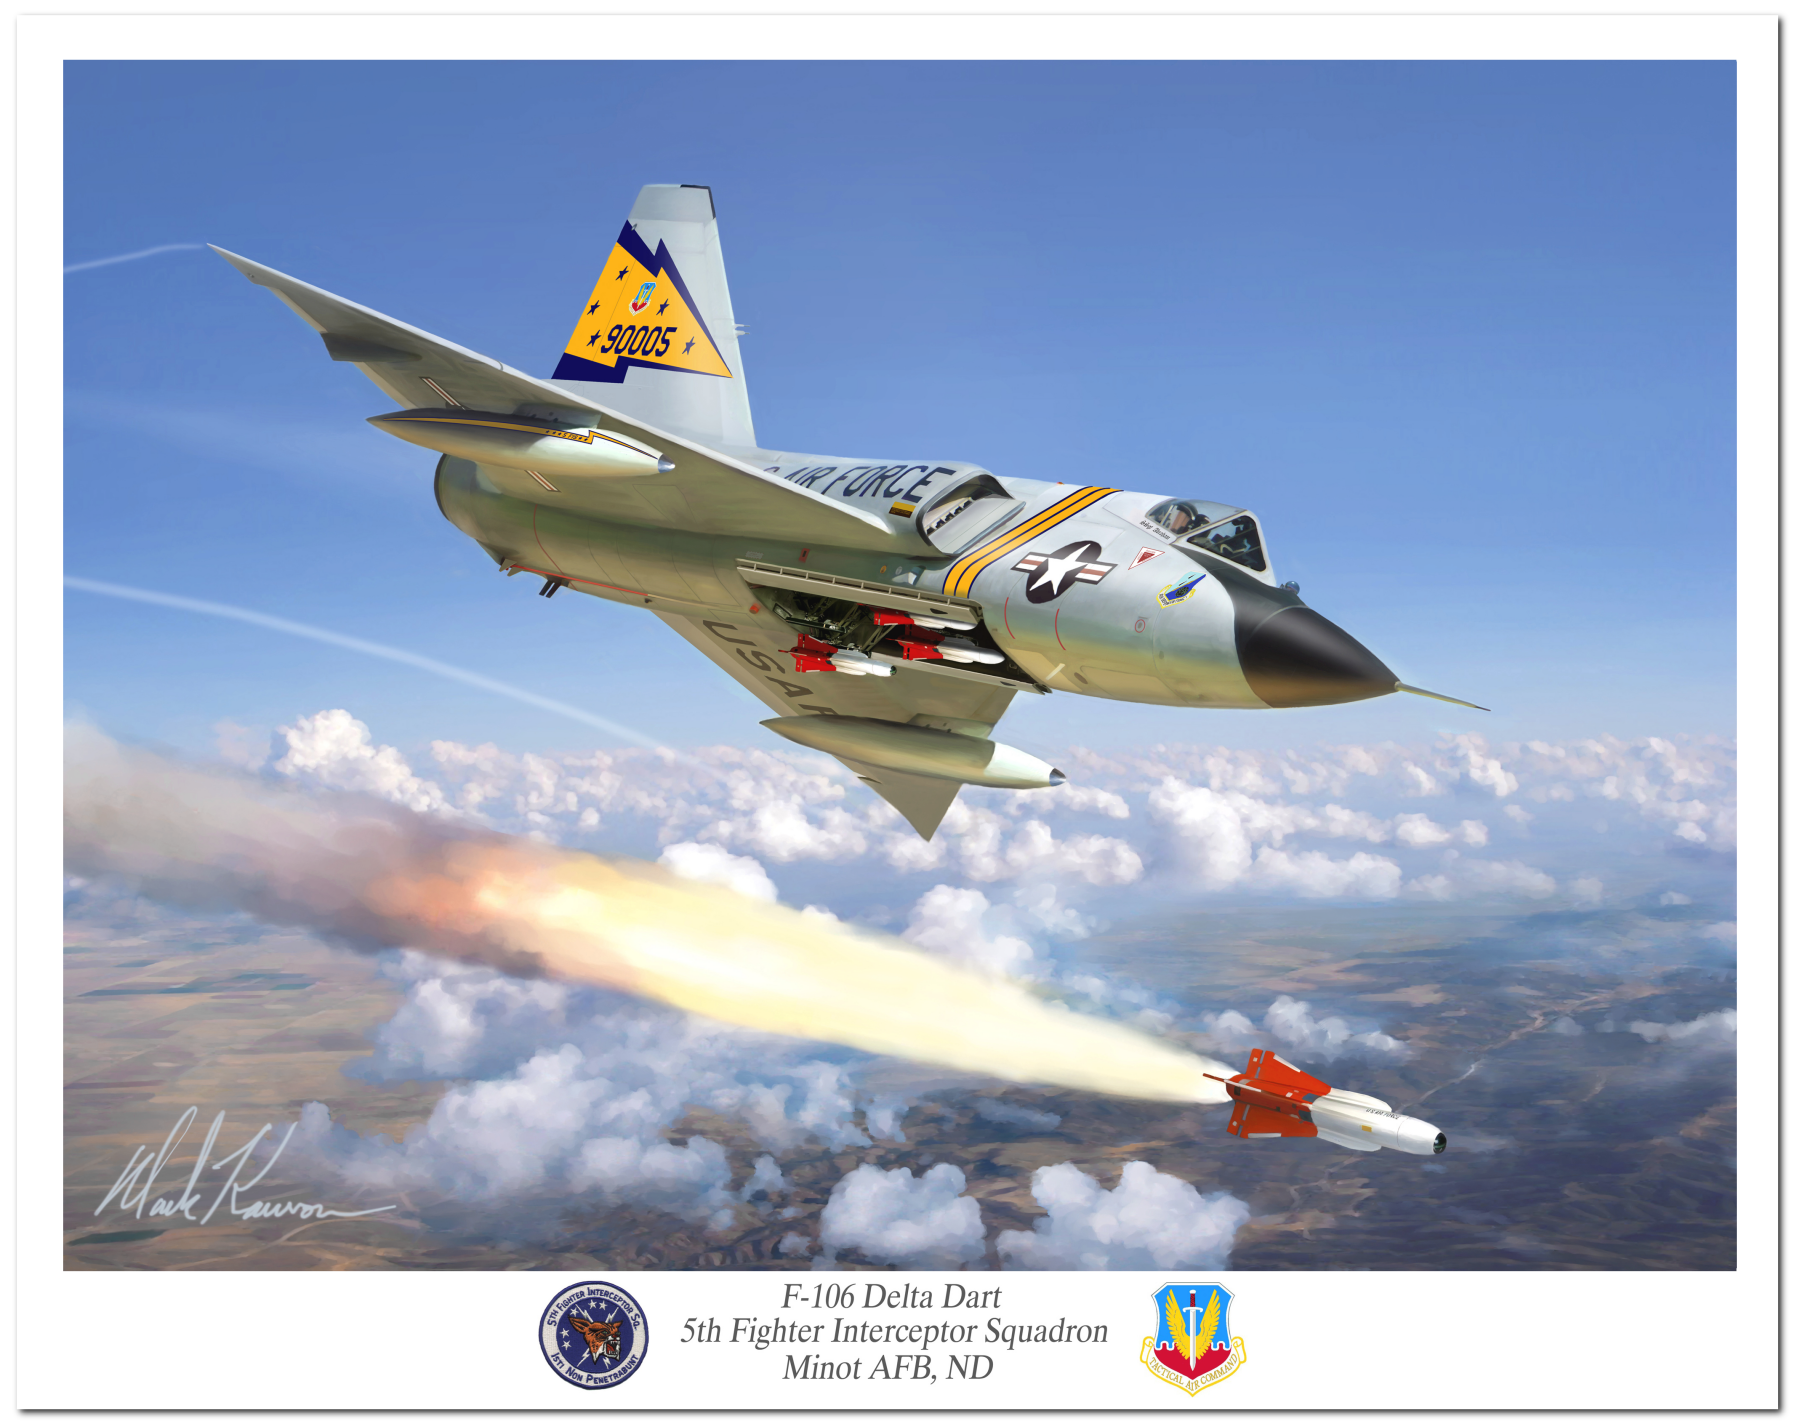 "F-106 Delta Dart" by Mark Karvon, Featuring the USAF F-16 Delta Dart